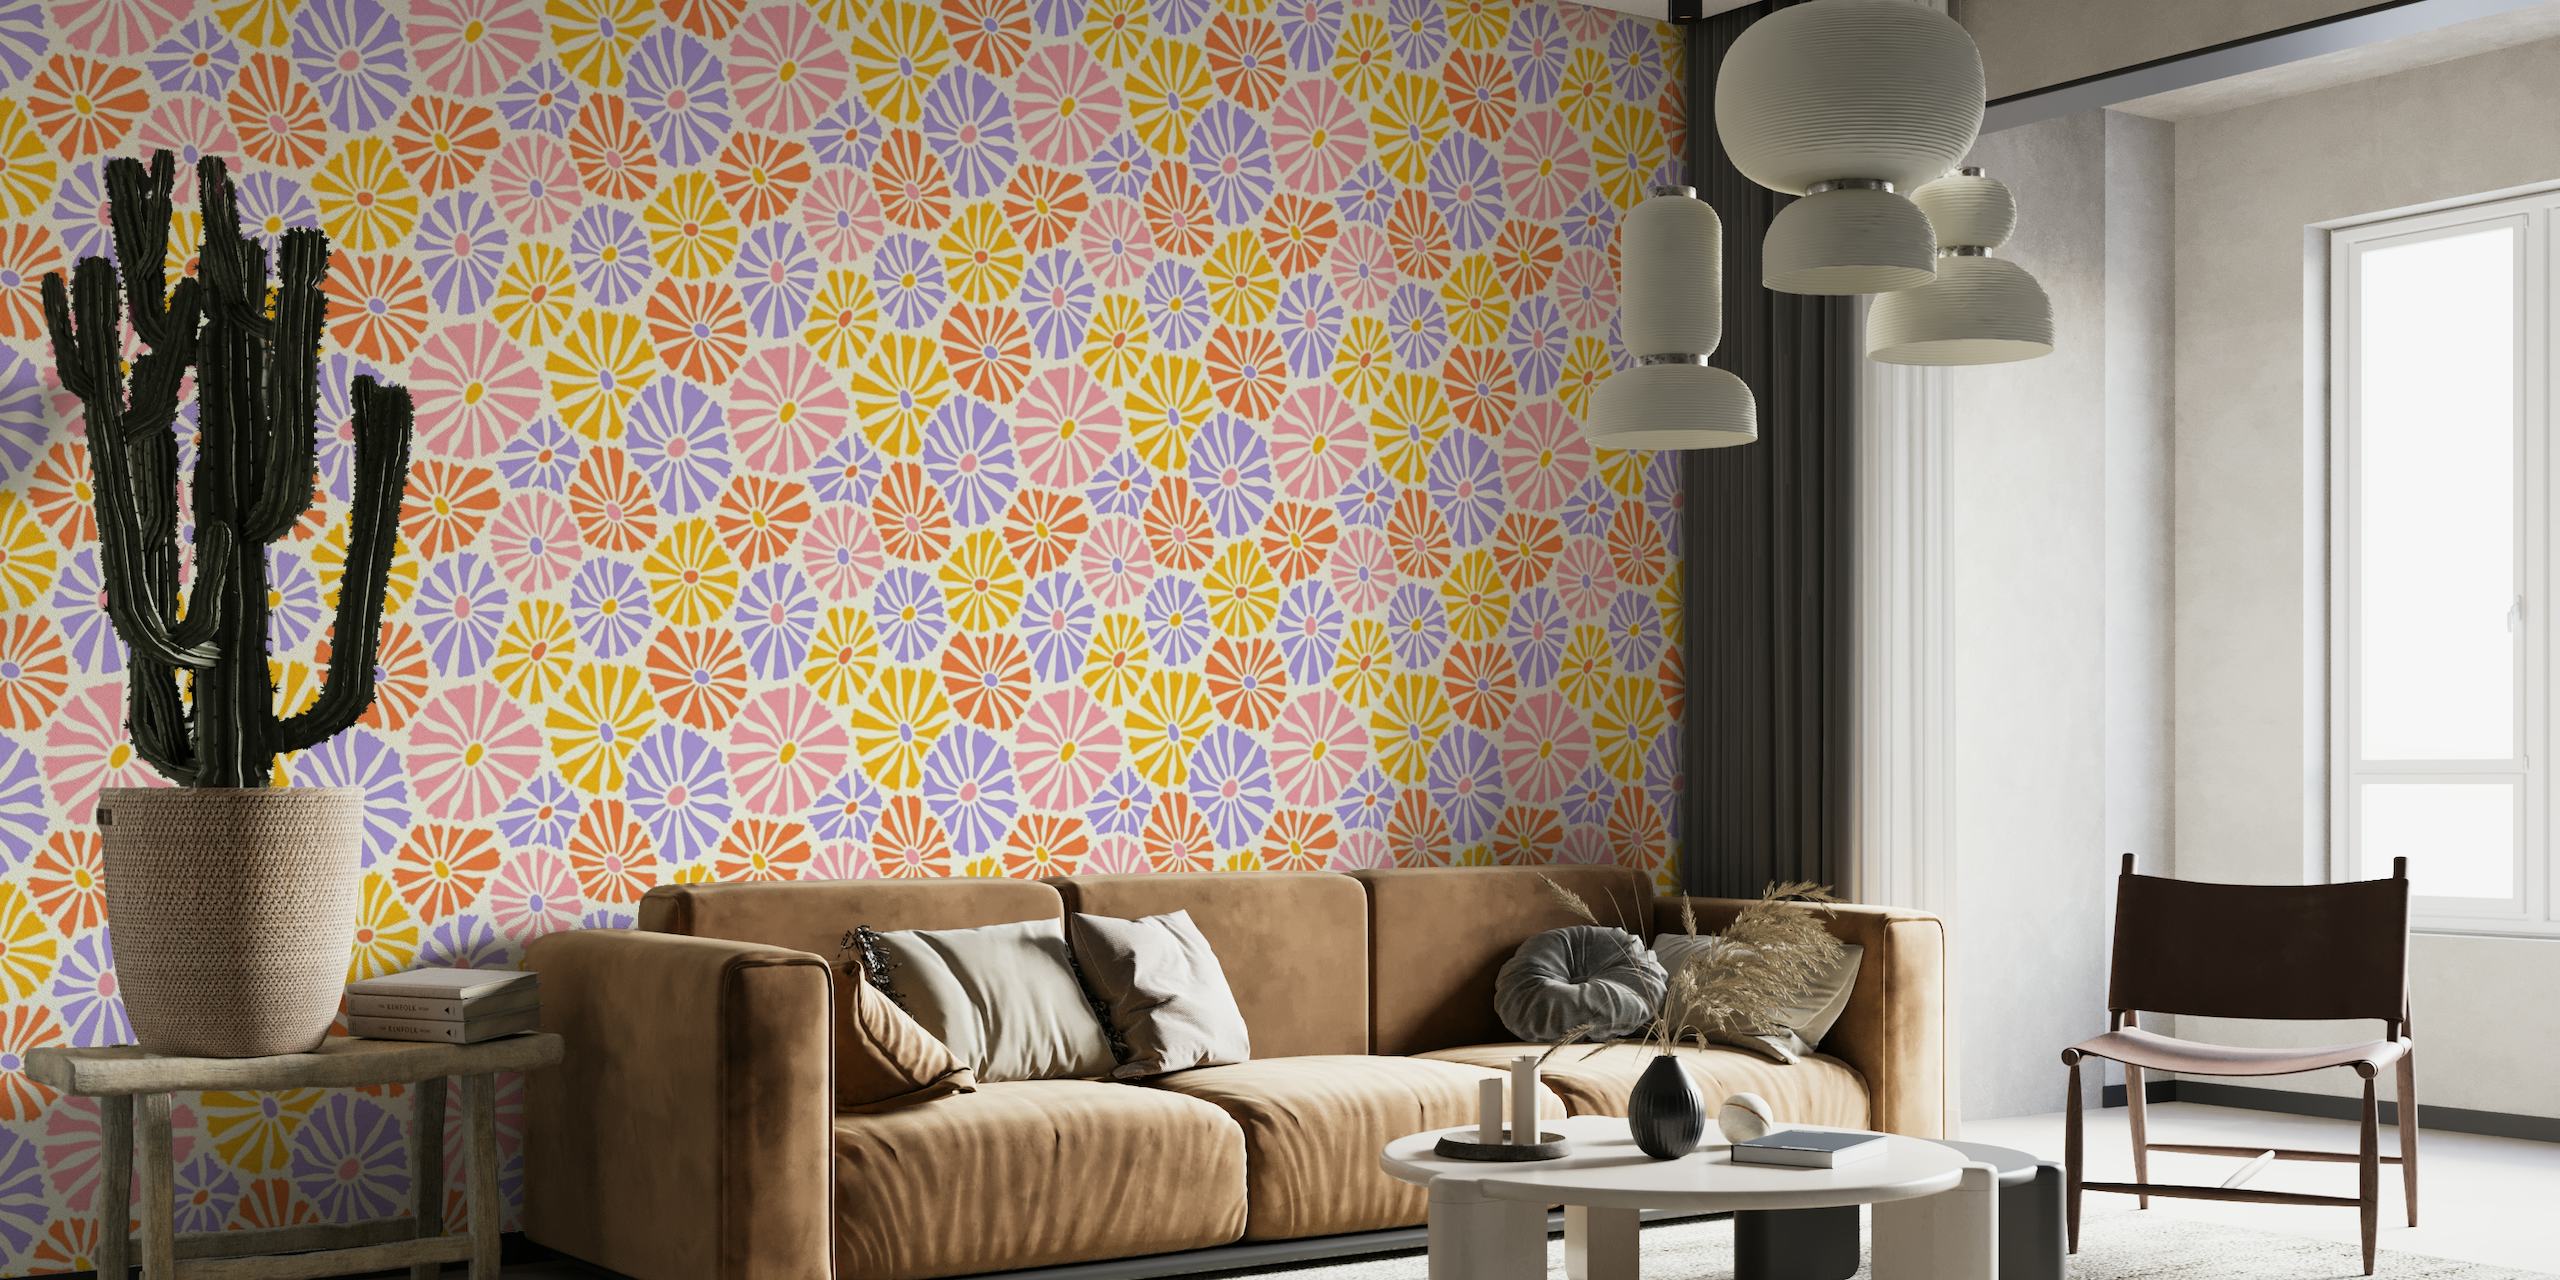 Retro inspiriran zidni mural koji prikazuje šarene tratinčice u ružičastoj, narančastoj, žutoj i ljubičastoj boji na bijeloj pozadini.